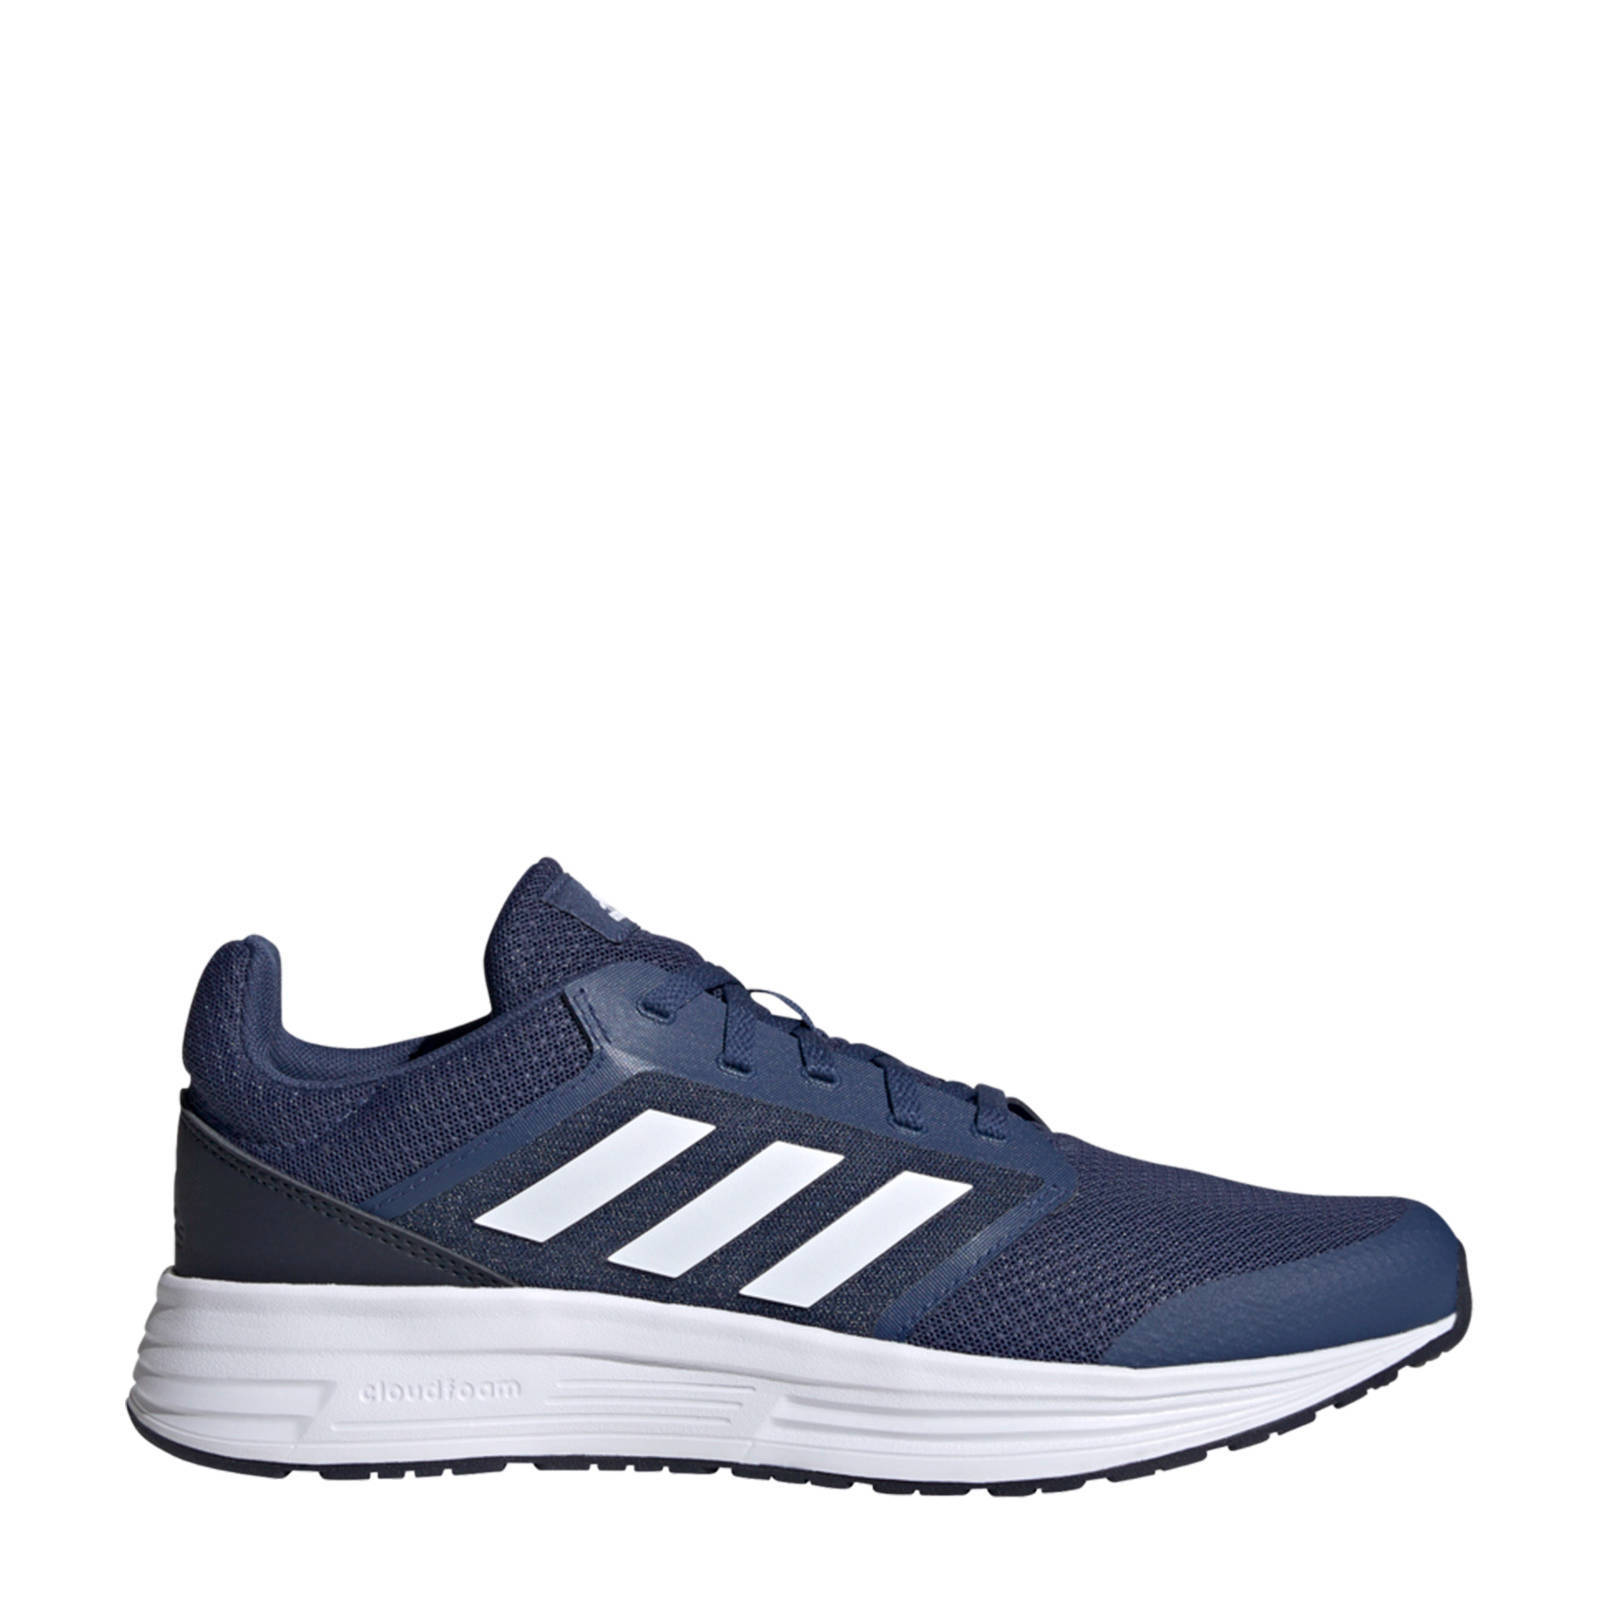 Adidas Performance Galaxy 5 Classic hardloopschoenen donkerblauw/wit online kopen